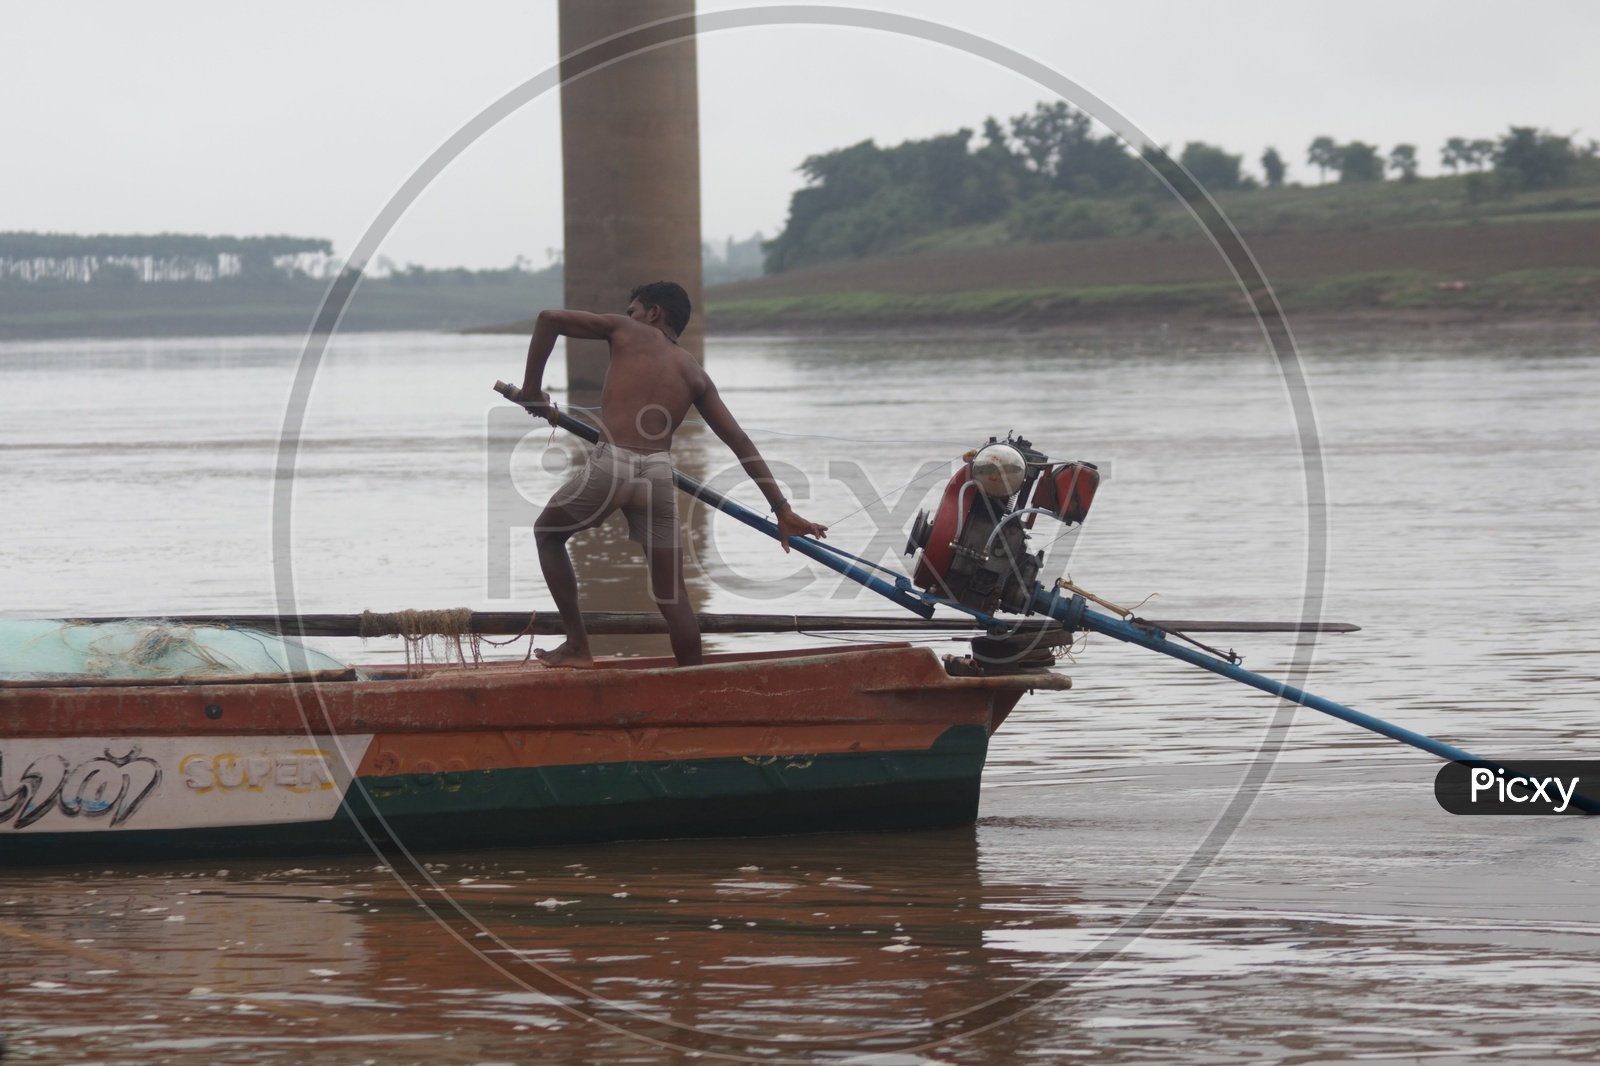 A Man sailing his boat on river godavari.